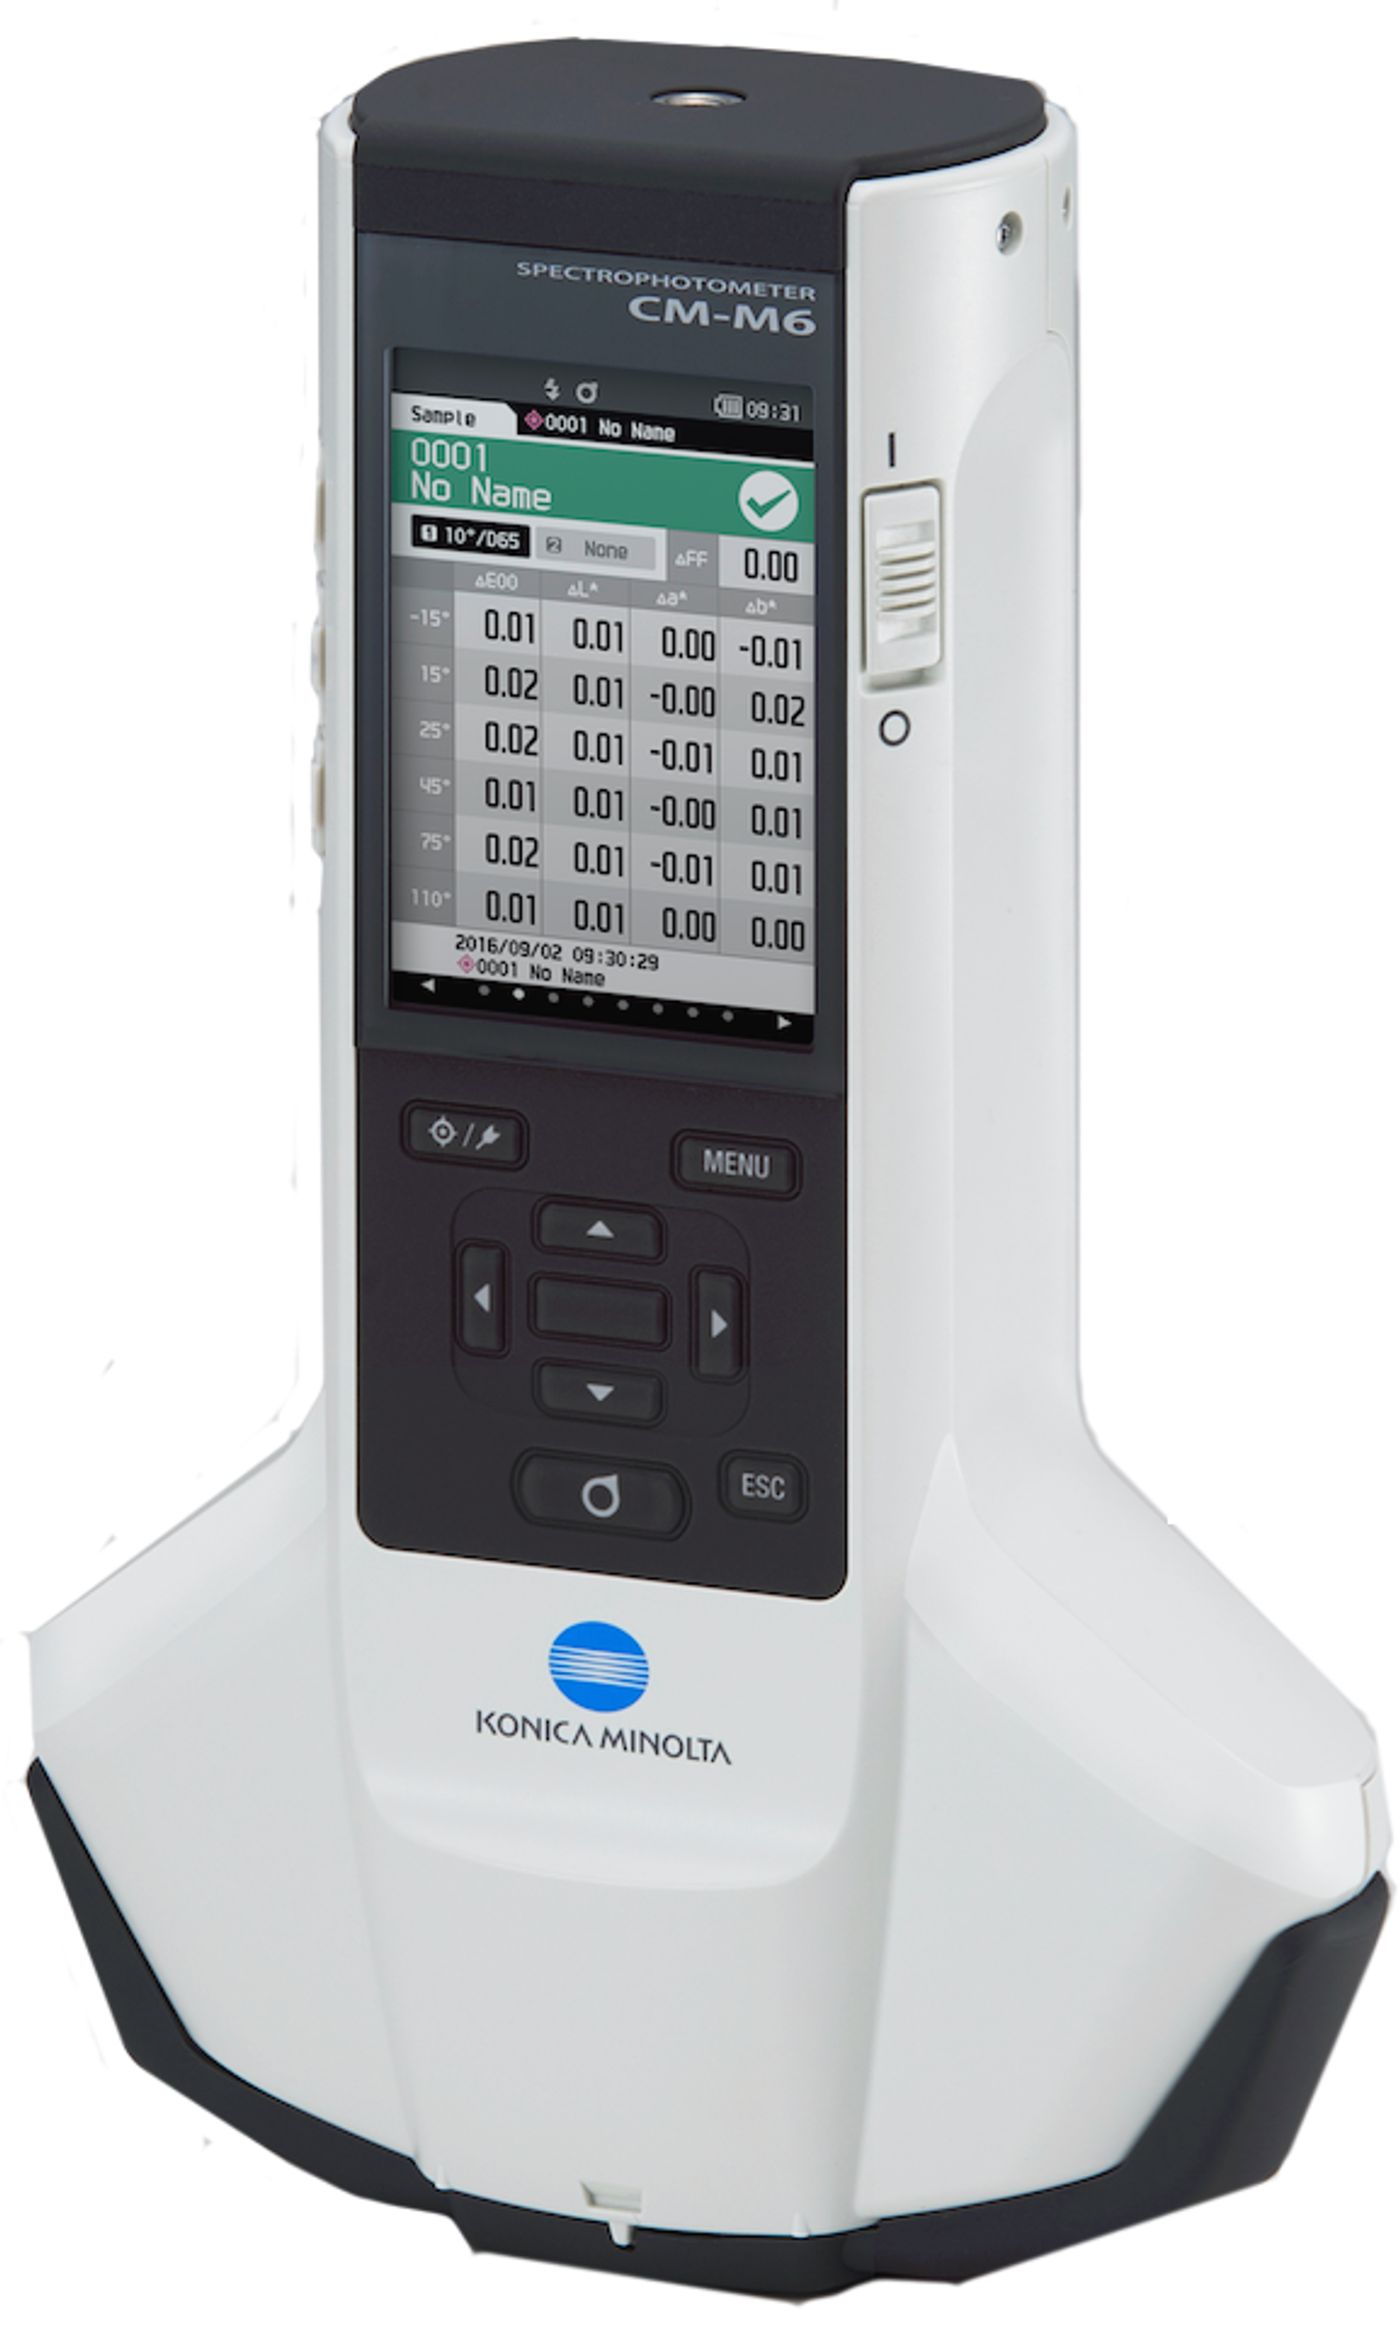 Konica-Minolta presenta dos nuevos espectrofotómetros diseñados para la industria automotriz